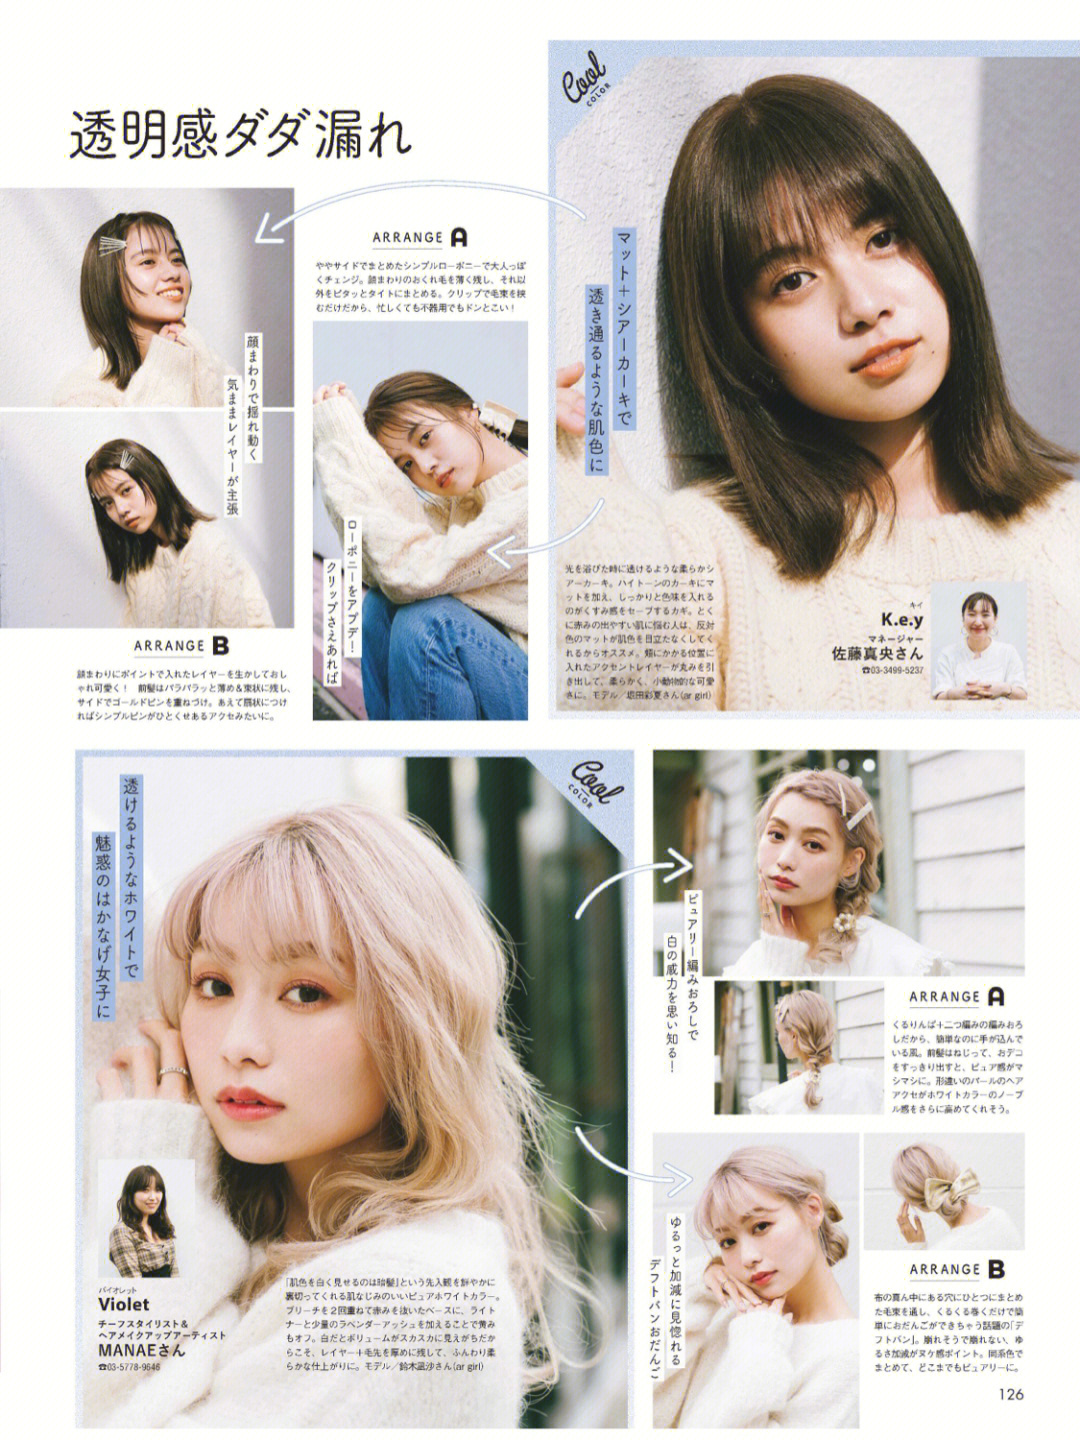 日本杂志分享一些日本妹子衬肤色的发色